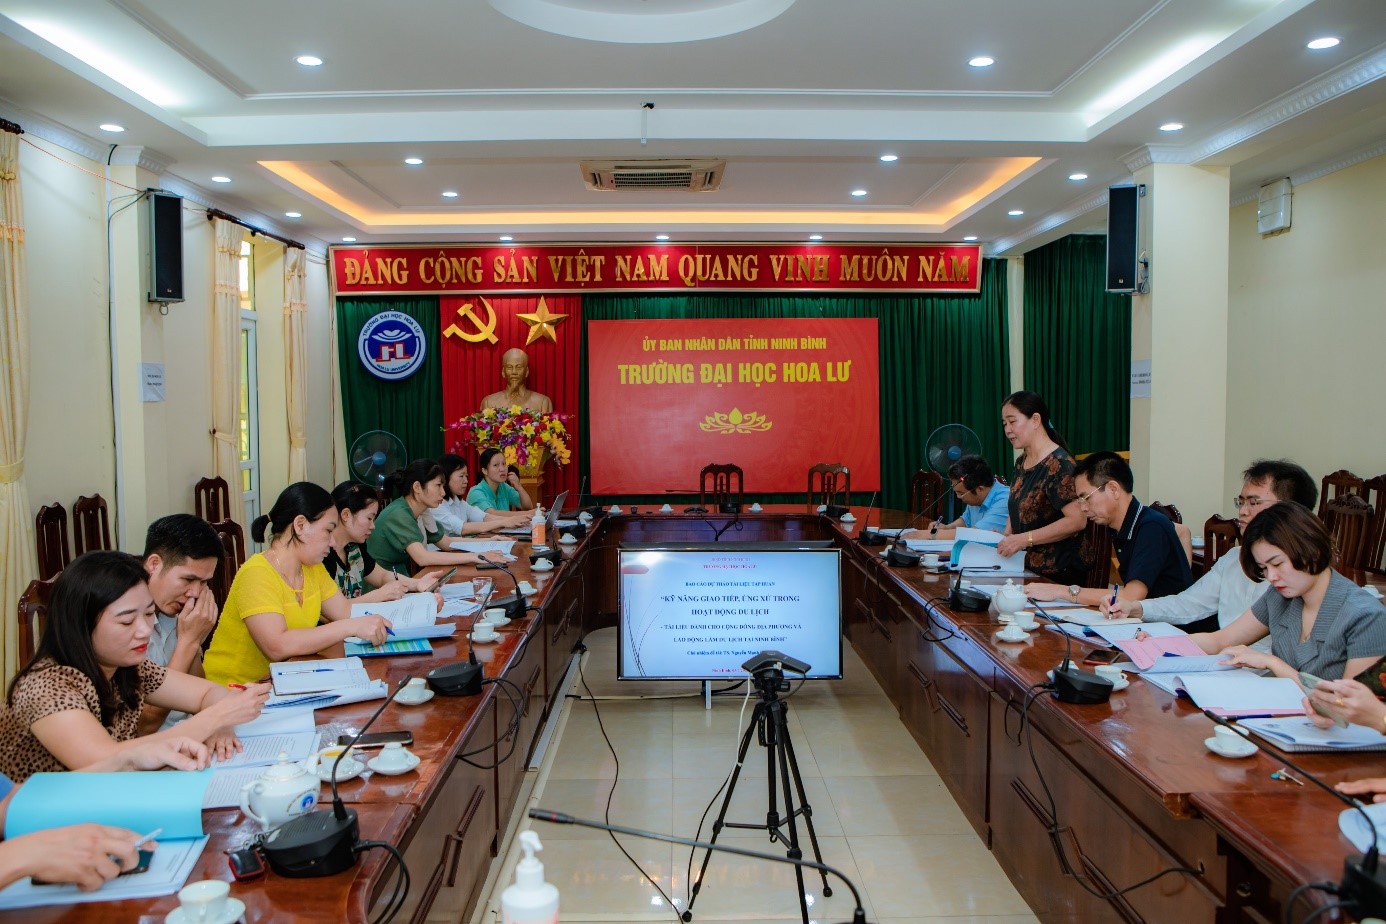 Hội thảo khoa học “Tài liệu tập huấn văn hóa du lịch dành cho cộng đồng địa phương và lao động làm du lịch tại Ninh Bình”